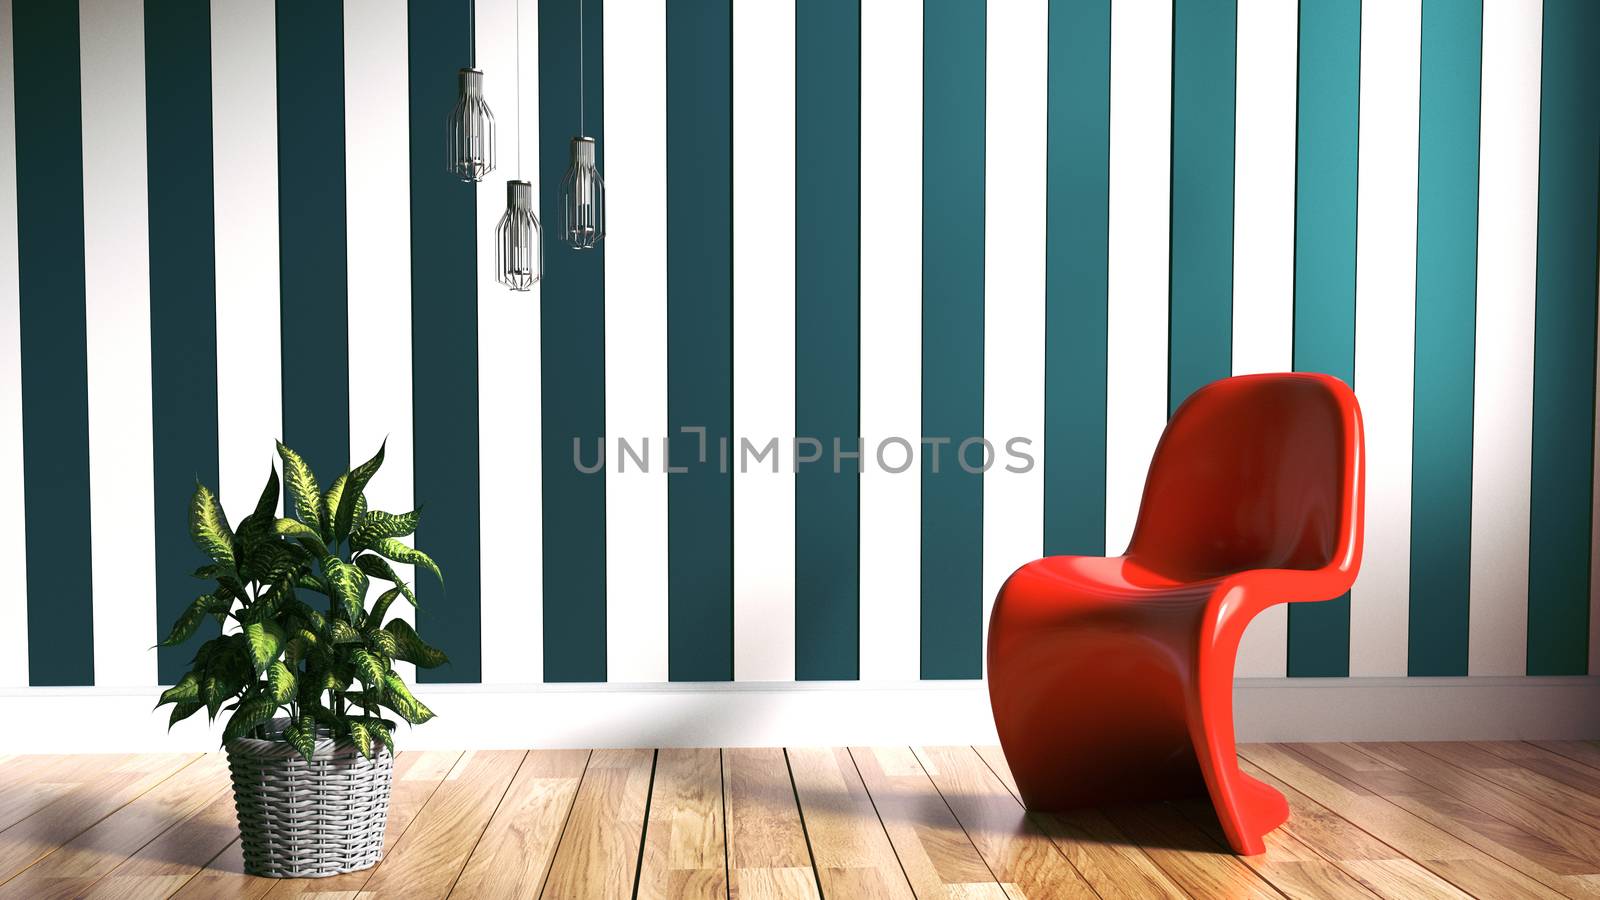 Living Room Scandinavian Style. 3D rendering